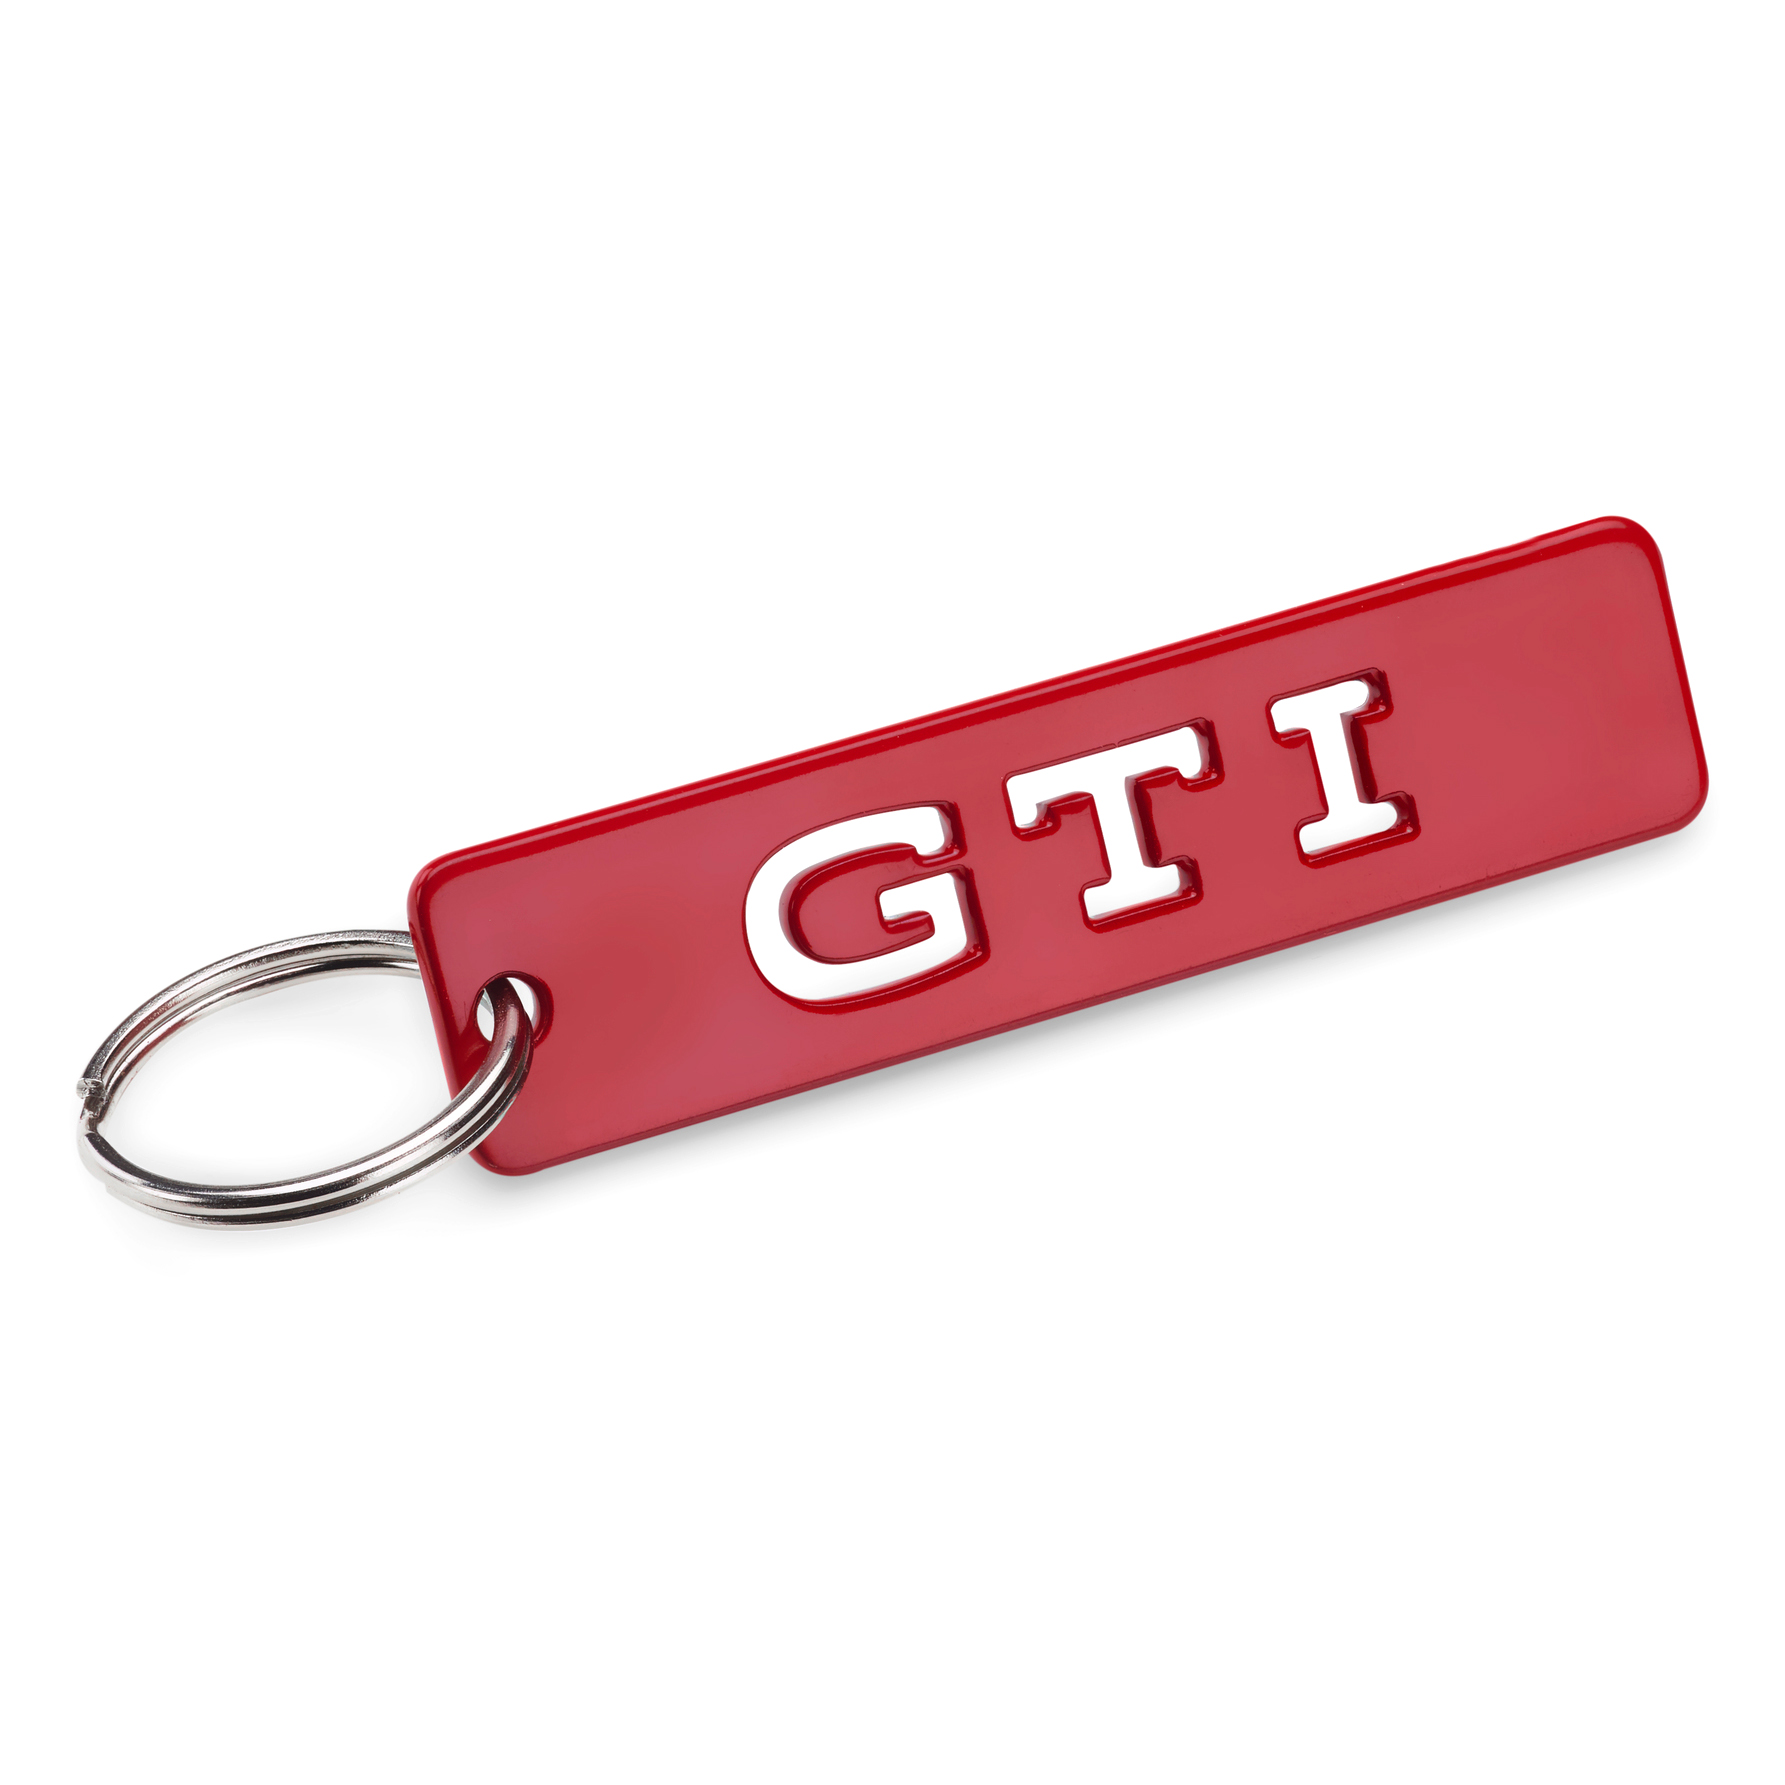 GTI Schlüsselanhänger mit Charm in Sichtverpackung - Since 1976/Rot -  600514909747